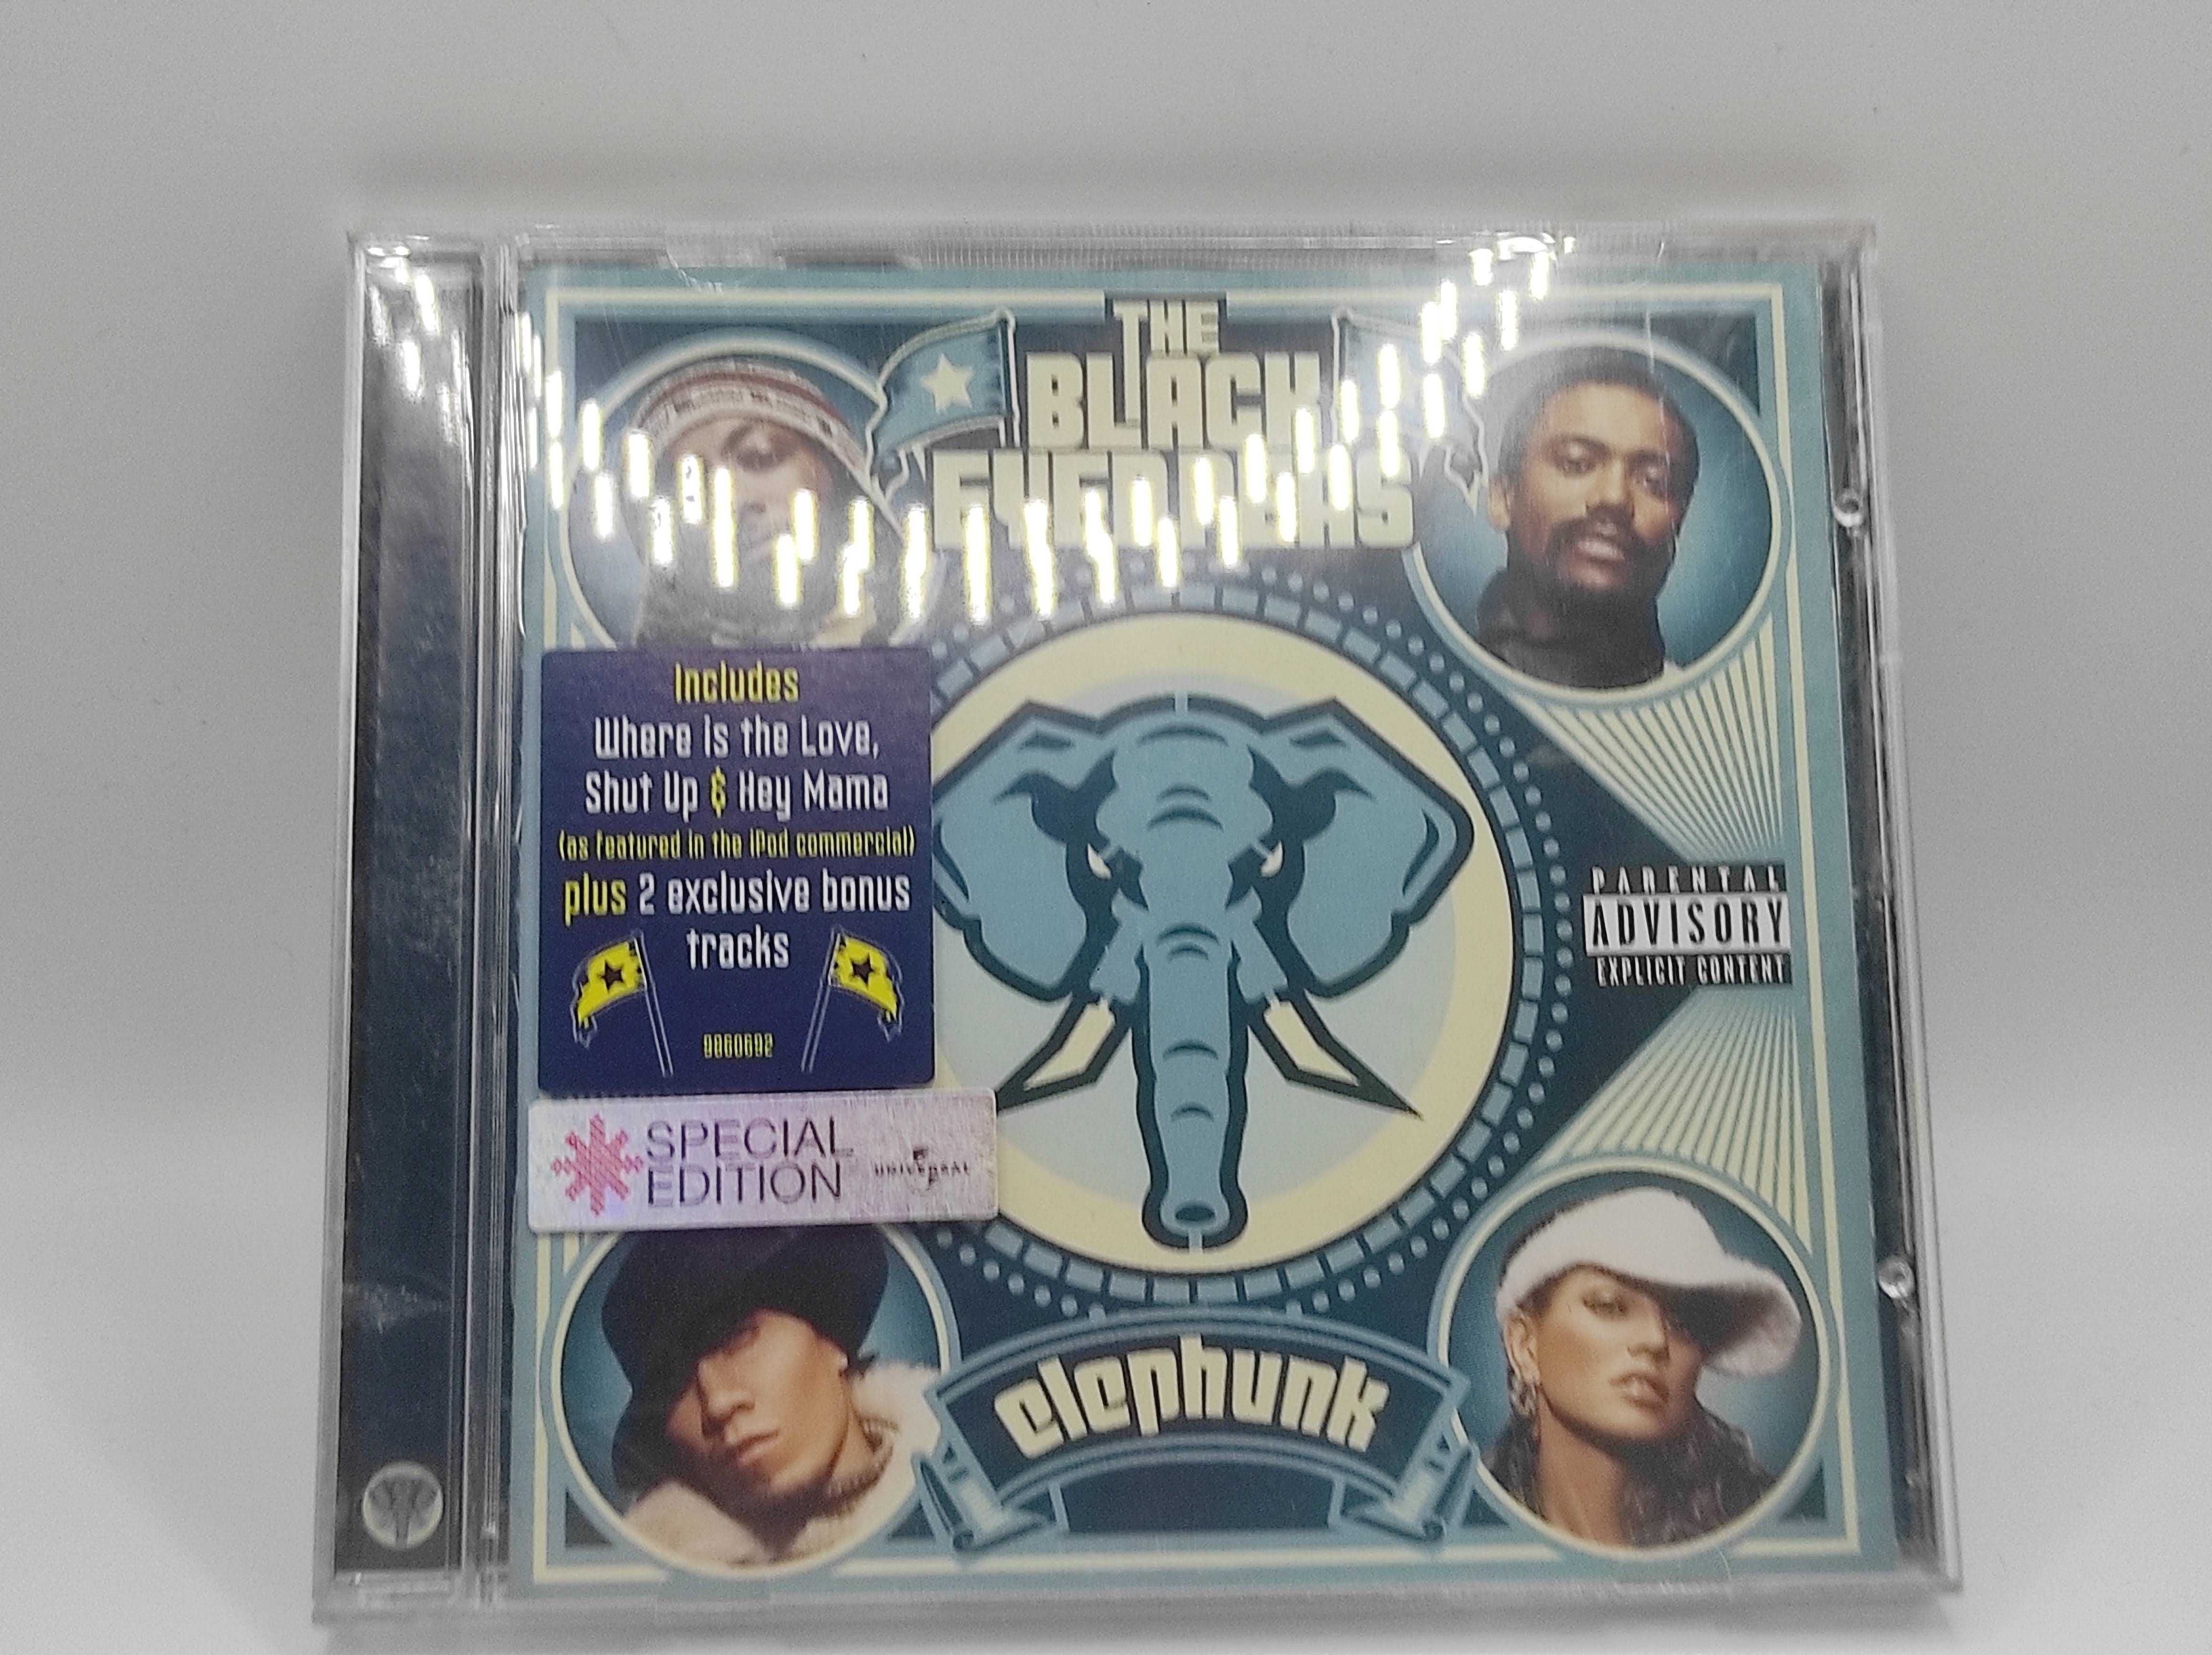 CD AUDIO Black Eyed Peas Elephunk